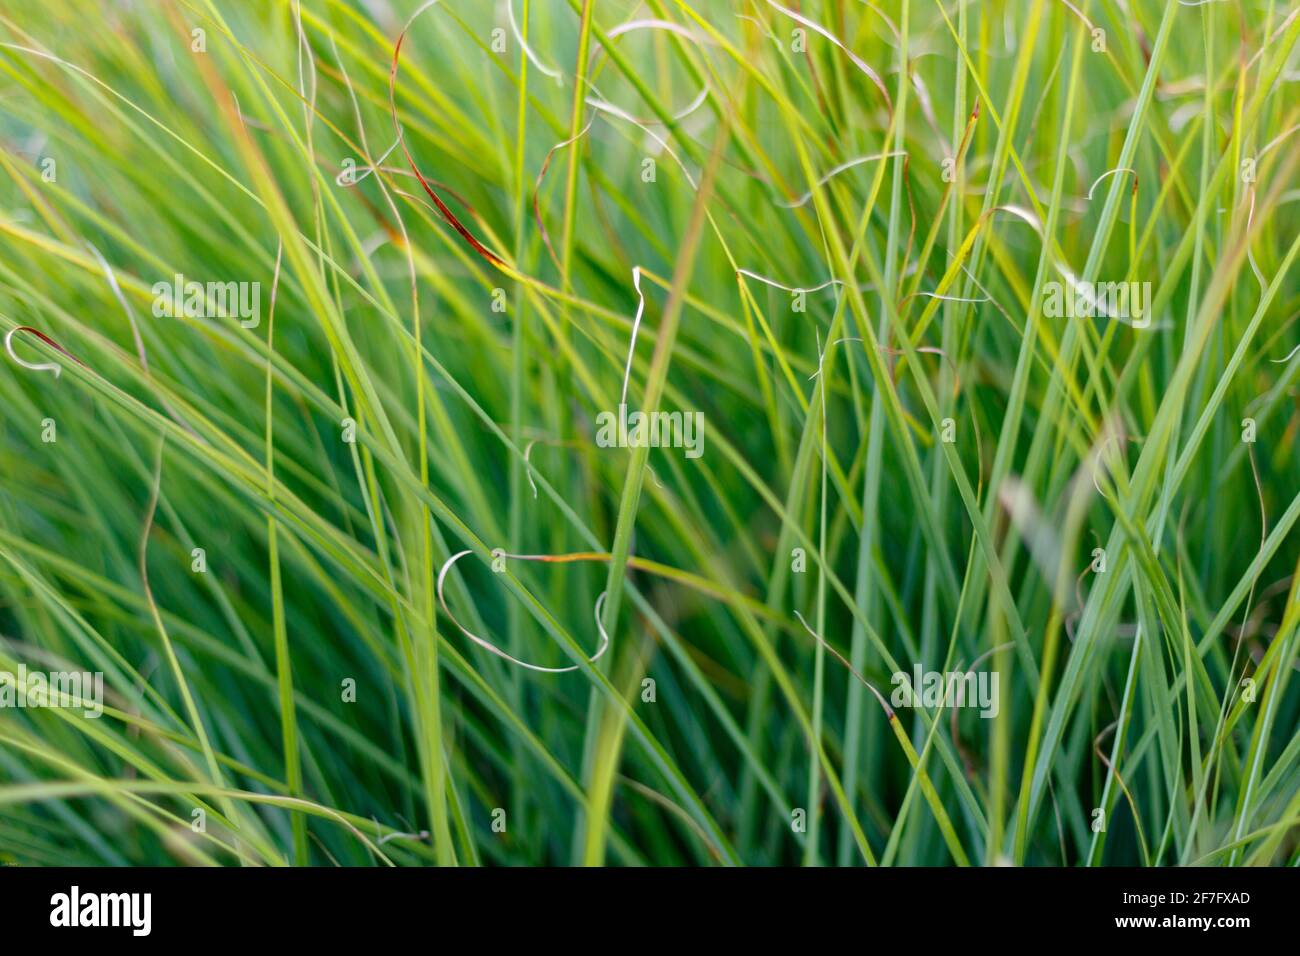 sfondo verde erba, primo piano e cornice completa Foto Stock